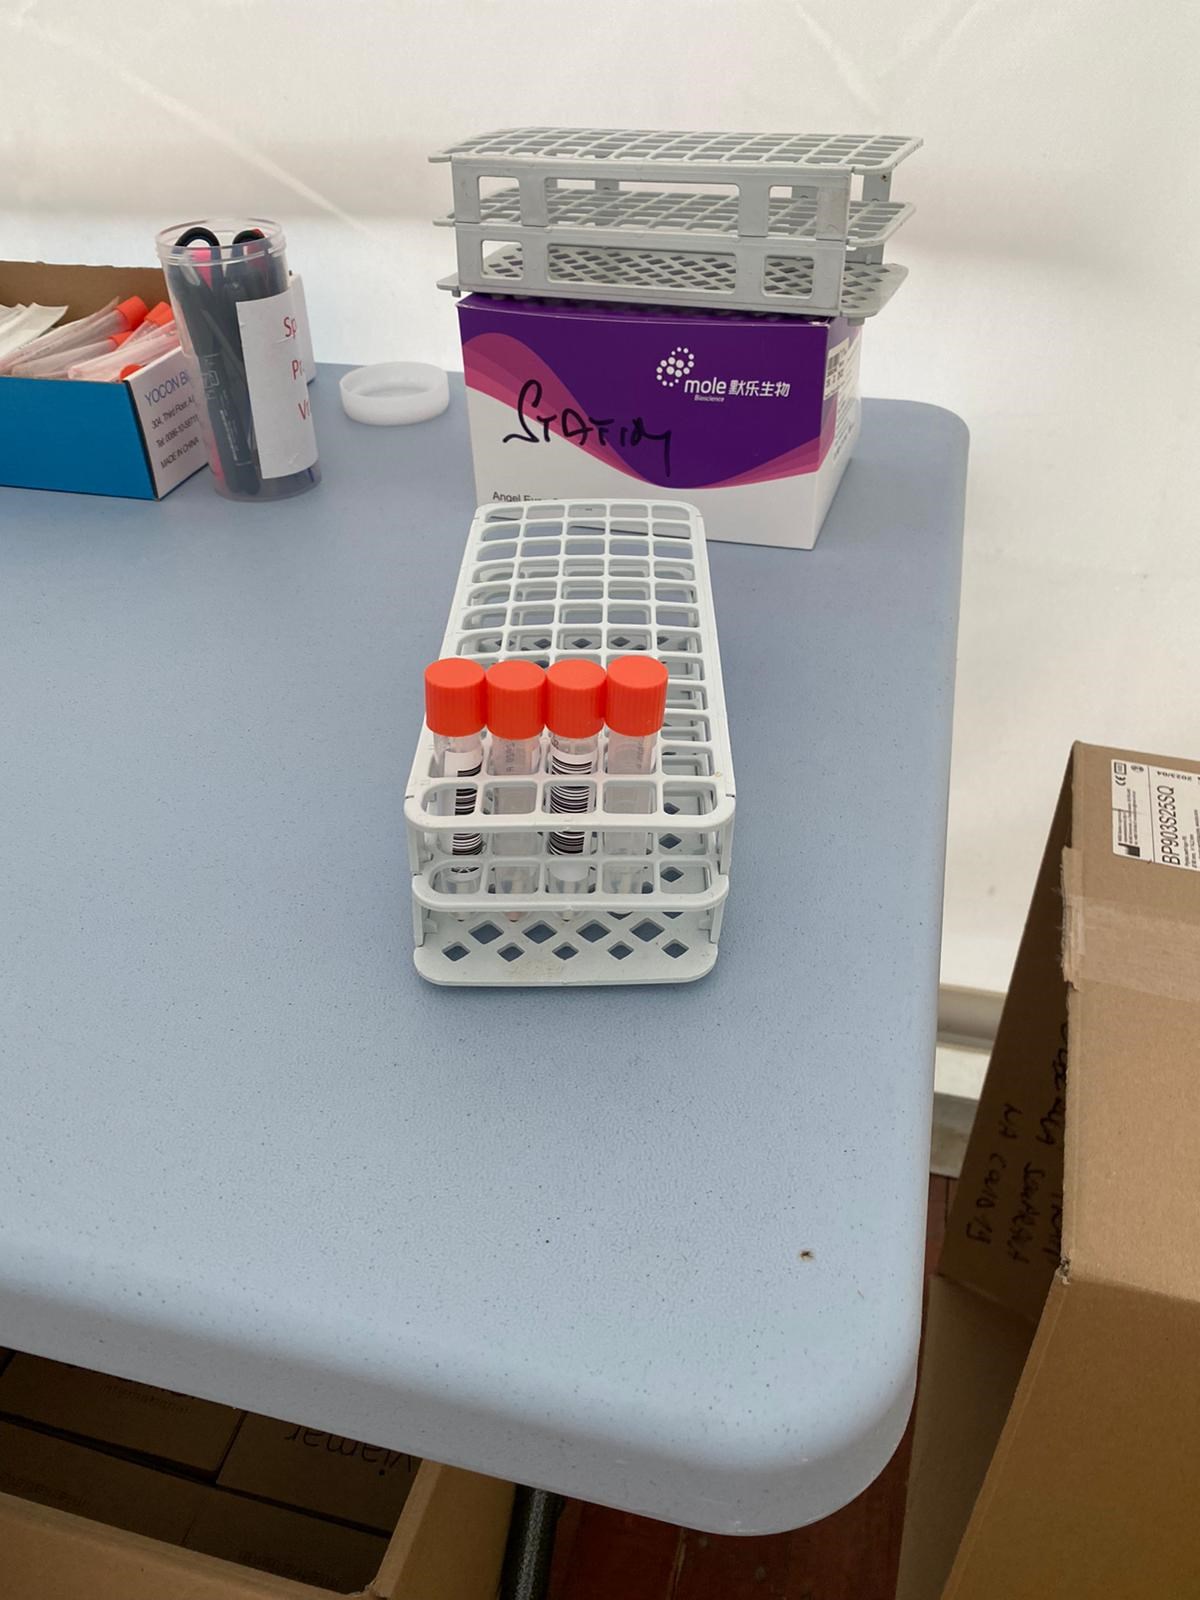 Test PCR na SARS CoV-2 je možné znovu absolvovat v mobilní buňce SPADIA LAB u Žlutých lázní v Praze-Podolí